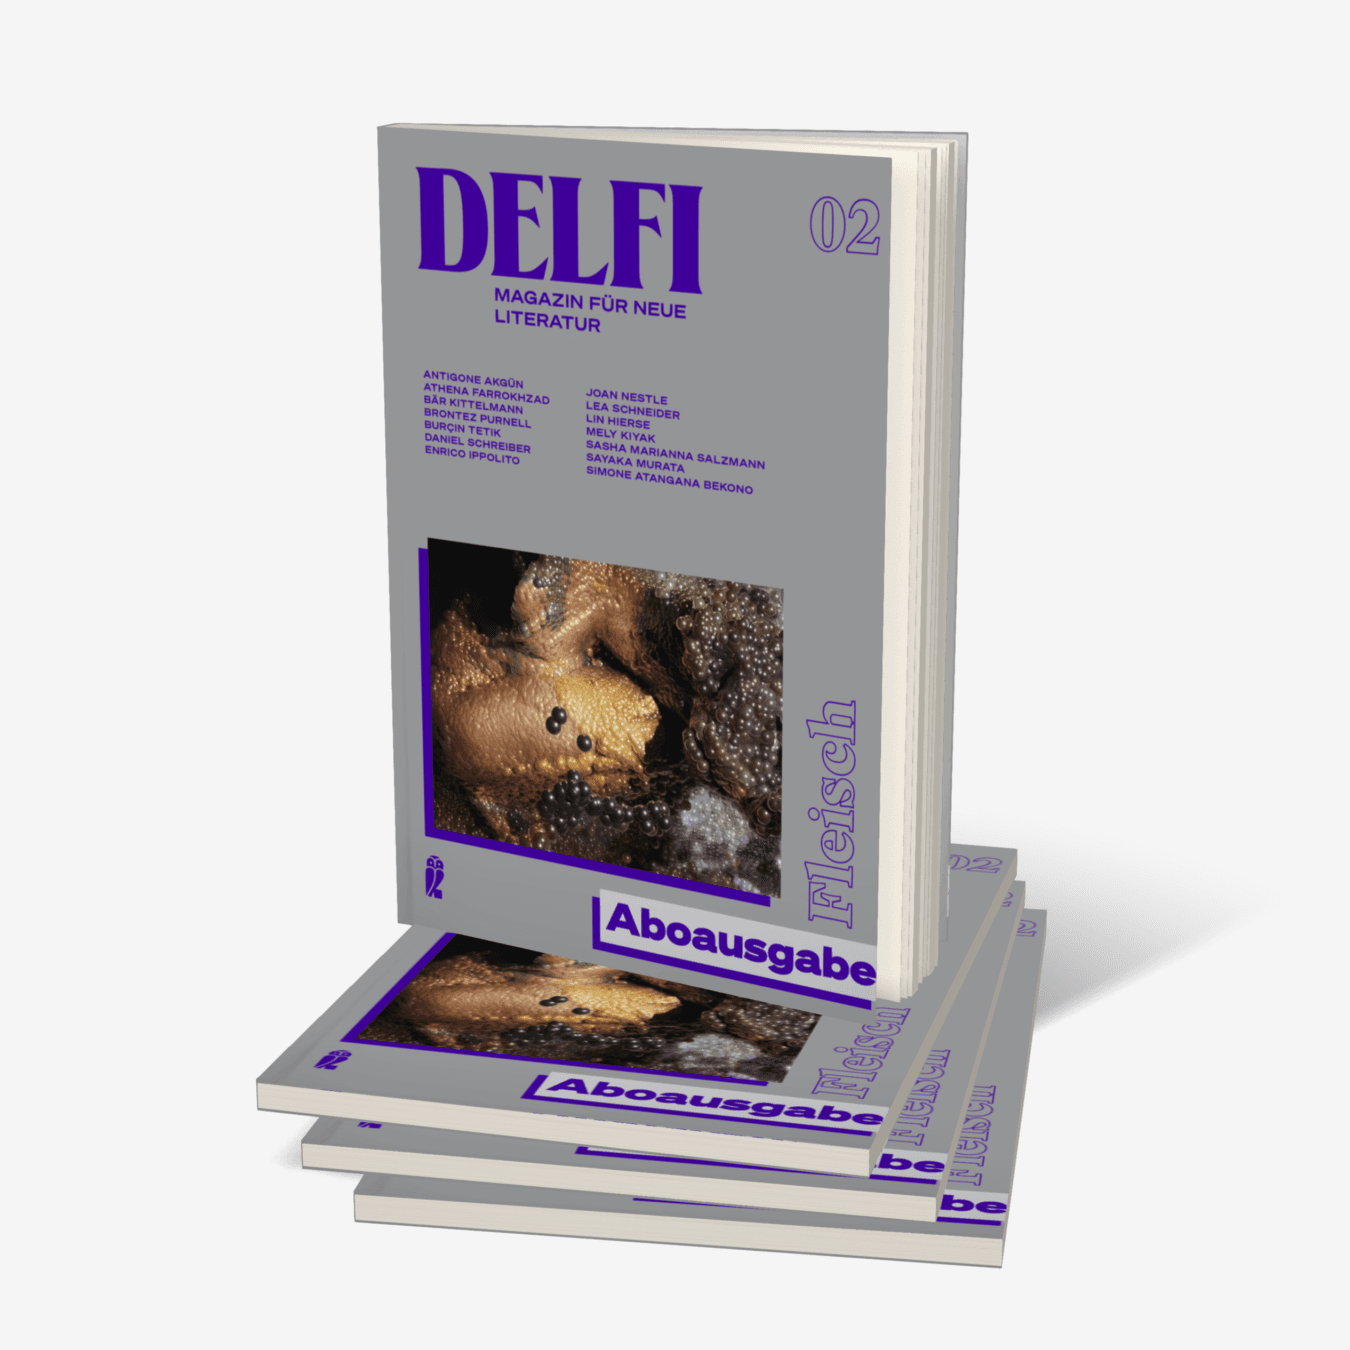 Buchcover von Delfi Fleisch - Aboausgabe (Delfi 2)